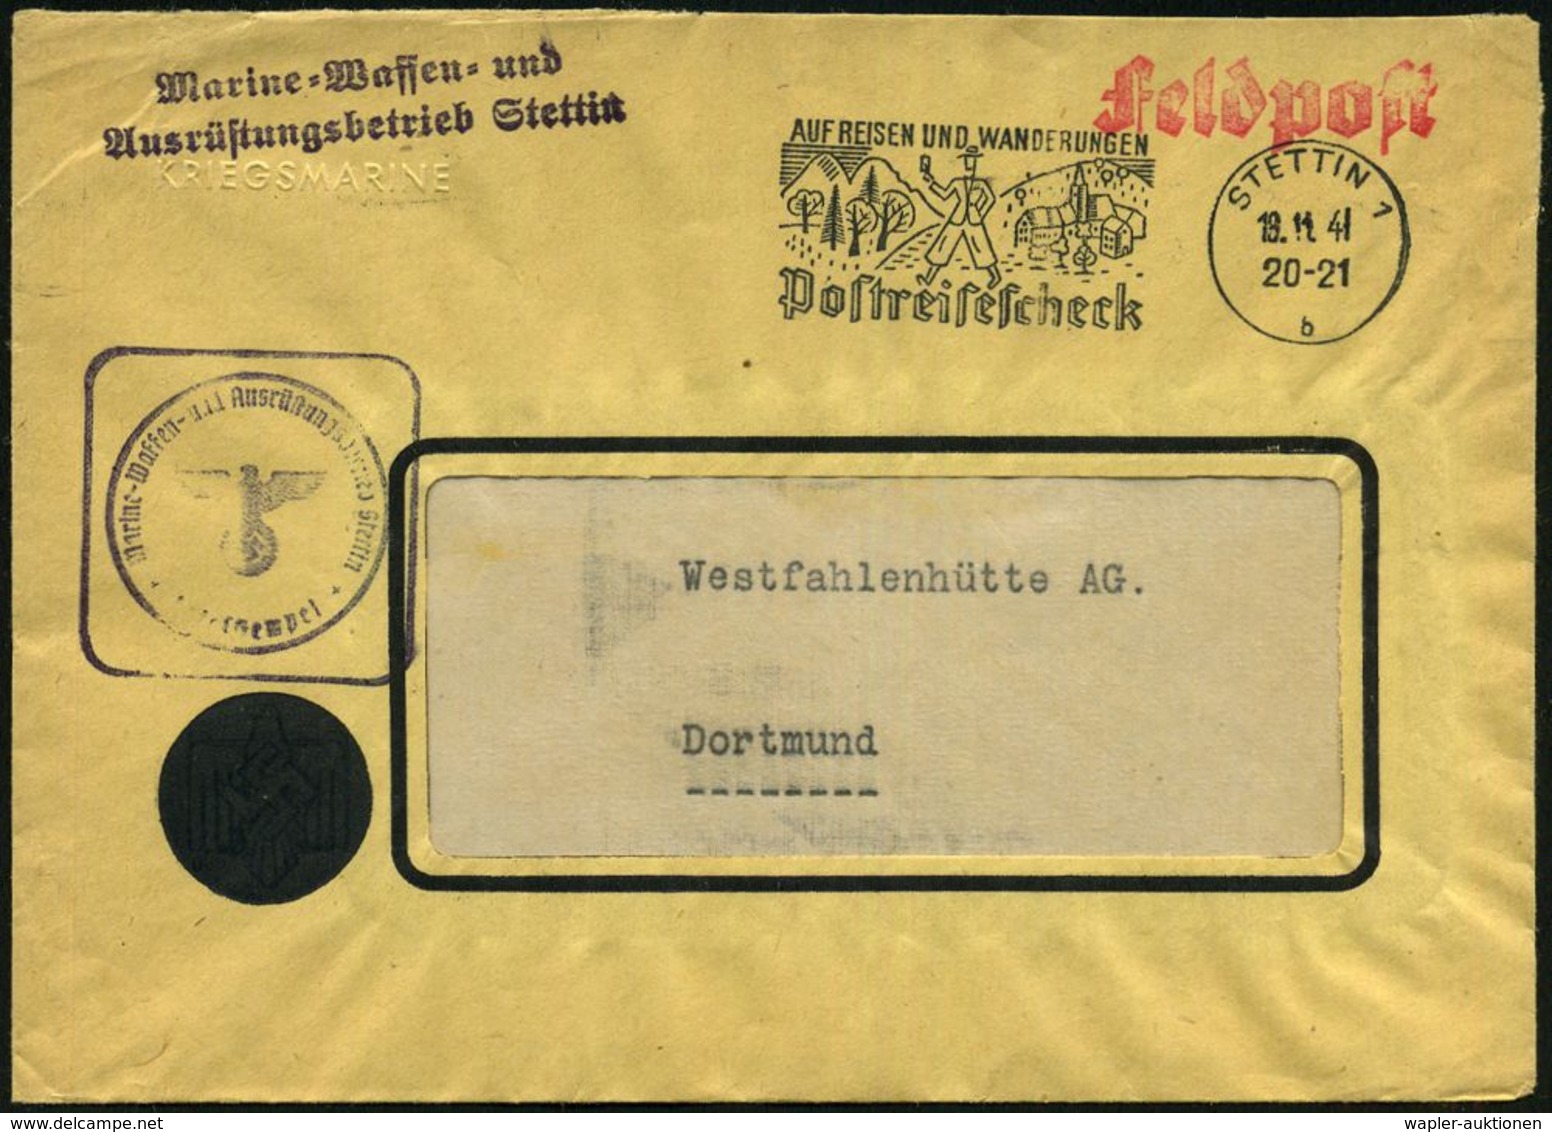 STETTIN 1/ B/ AUF REISEN U.WANDERUNGEN/ Postreisescheck 1941 (18.11.) MWSt + Viol. 2L: Marine-Waffen- U./Ausrüstungsbetr - Maritiem